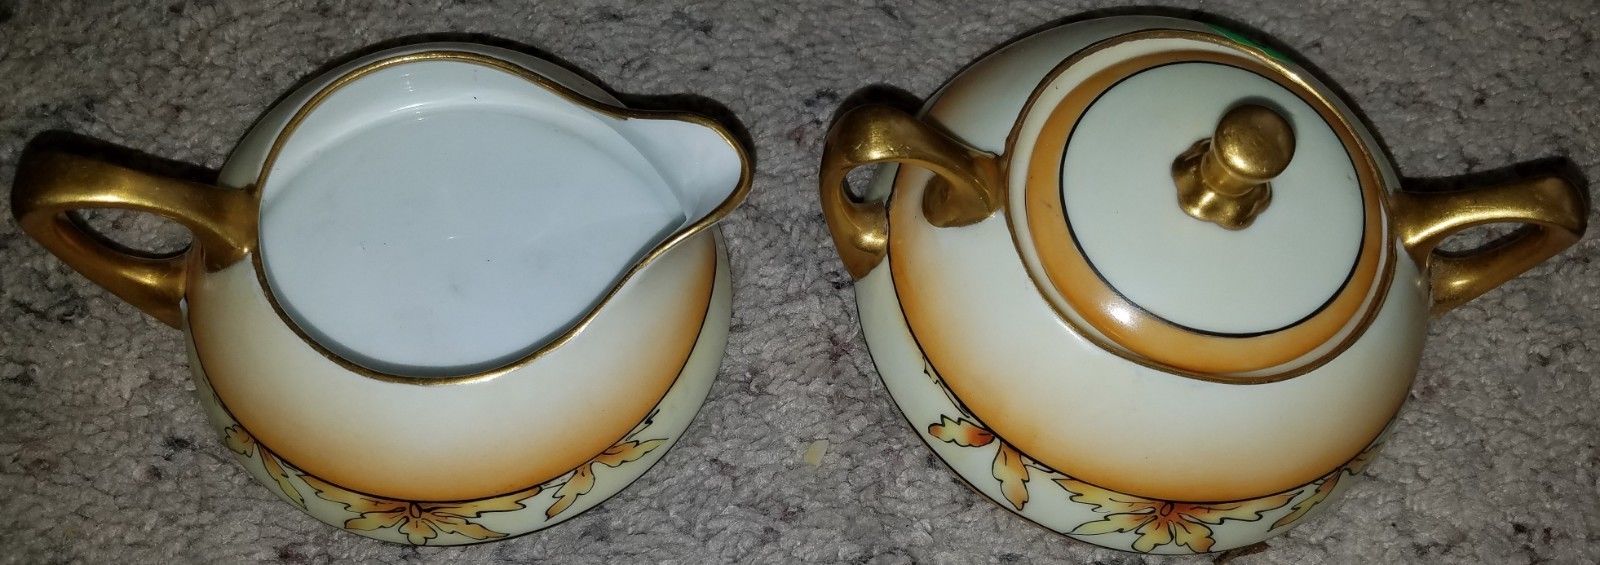 Heinrich H & Co Selb Bavaria Tea Creamer and Sugar bowl